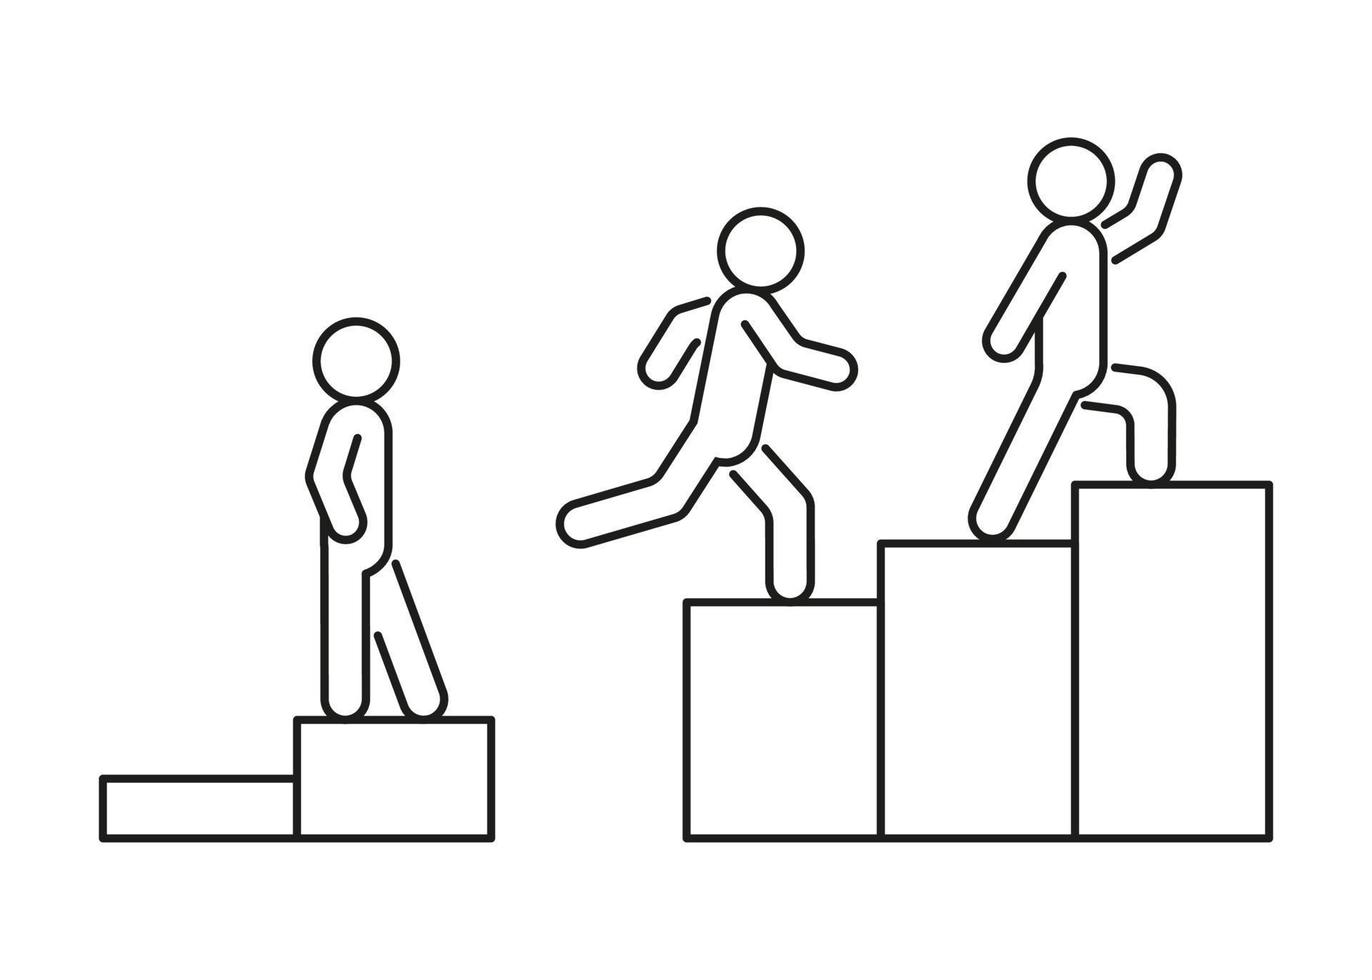 framstegsskicklighetsarbetare, gå i trappor med hinder, höja nivån i affärer, linjekonst. olika nivåer av livet på stegen. prestation och framgång. svår väg till mål. vektor illustration